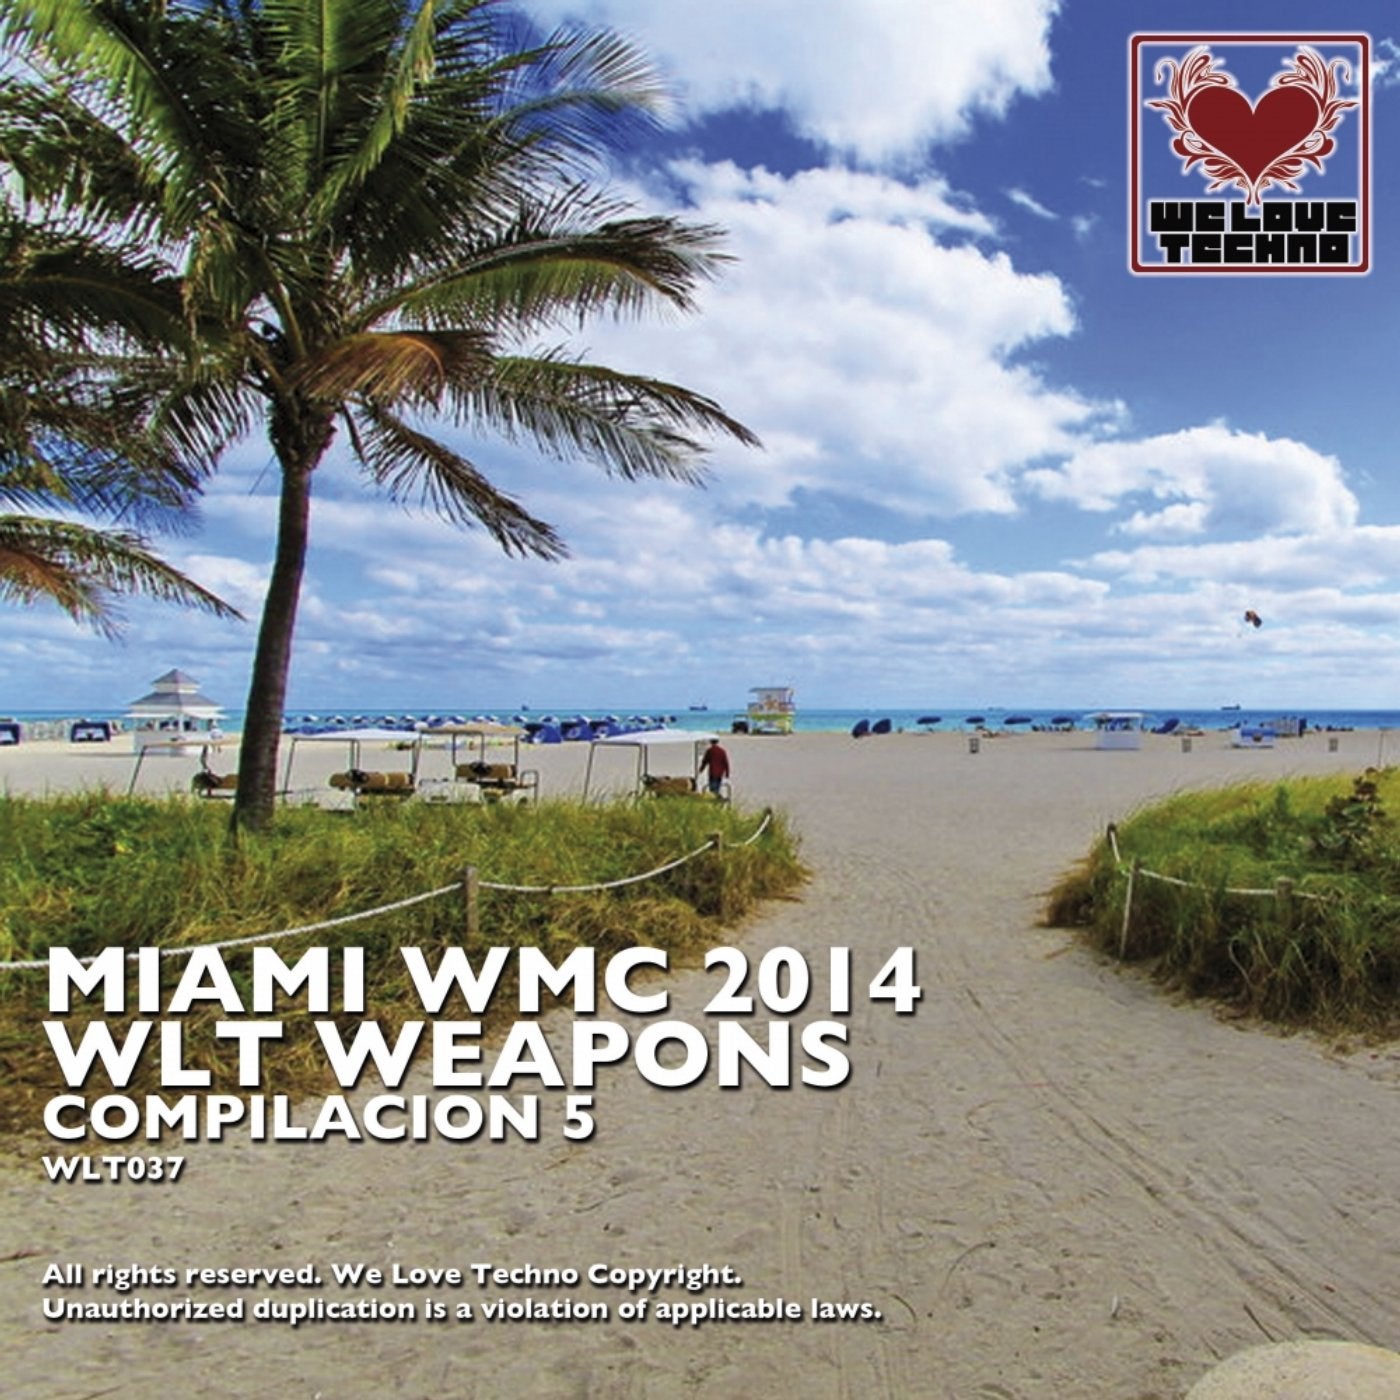 Miami WMC 2014 Weapons